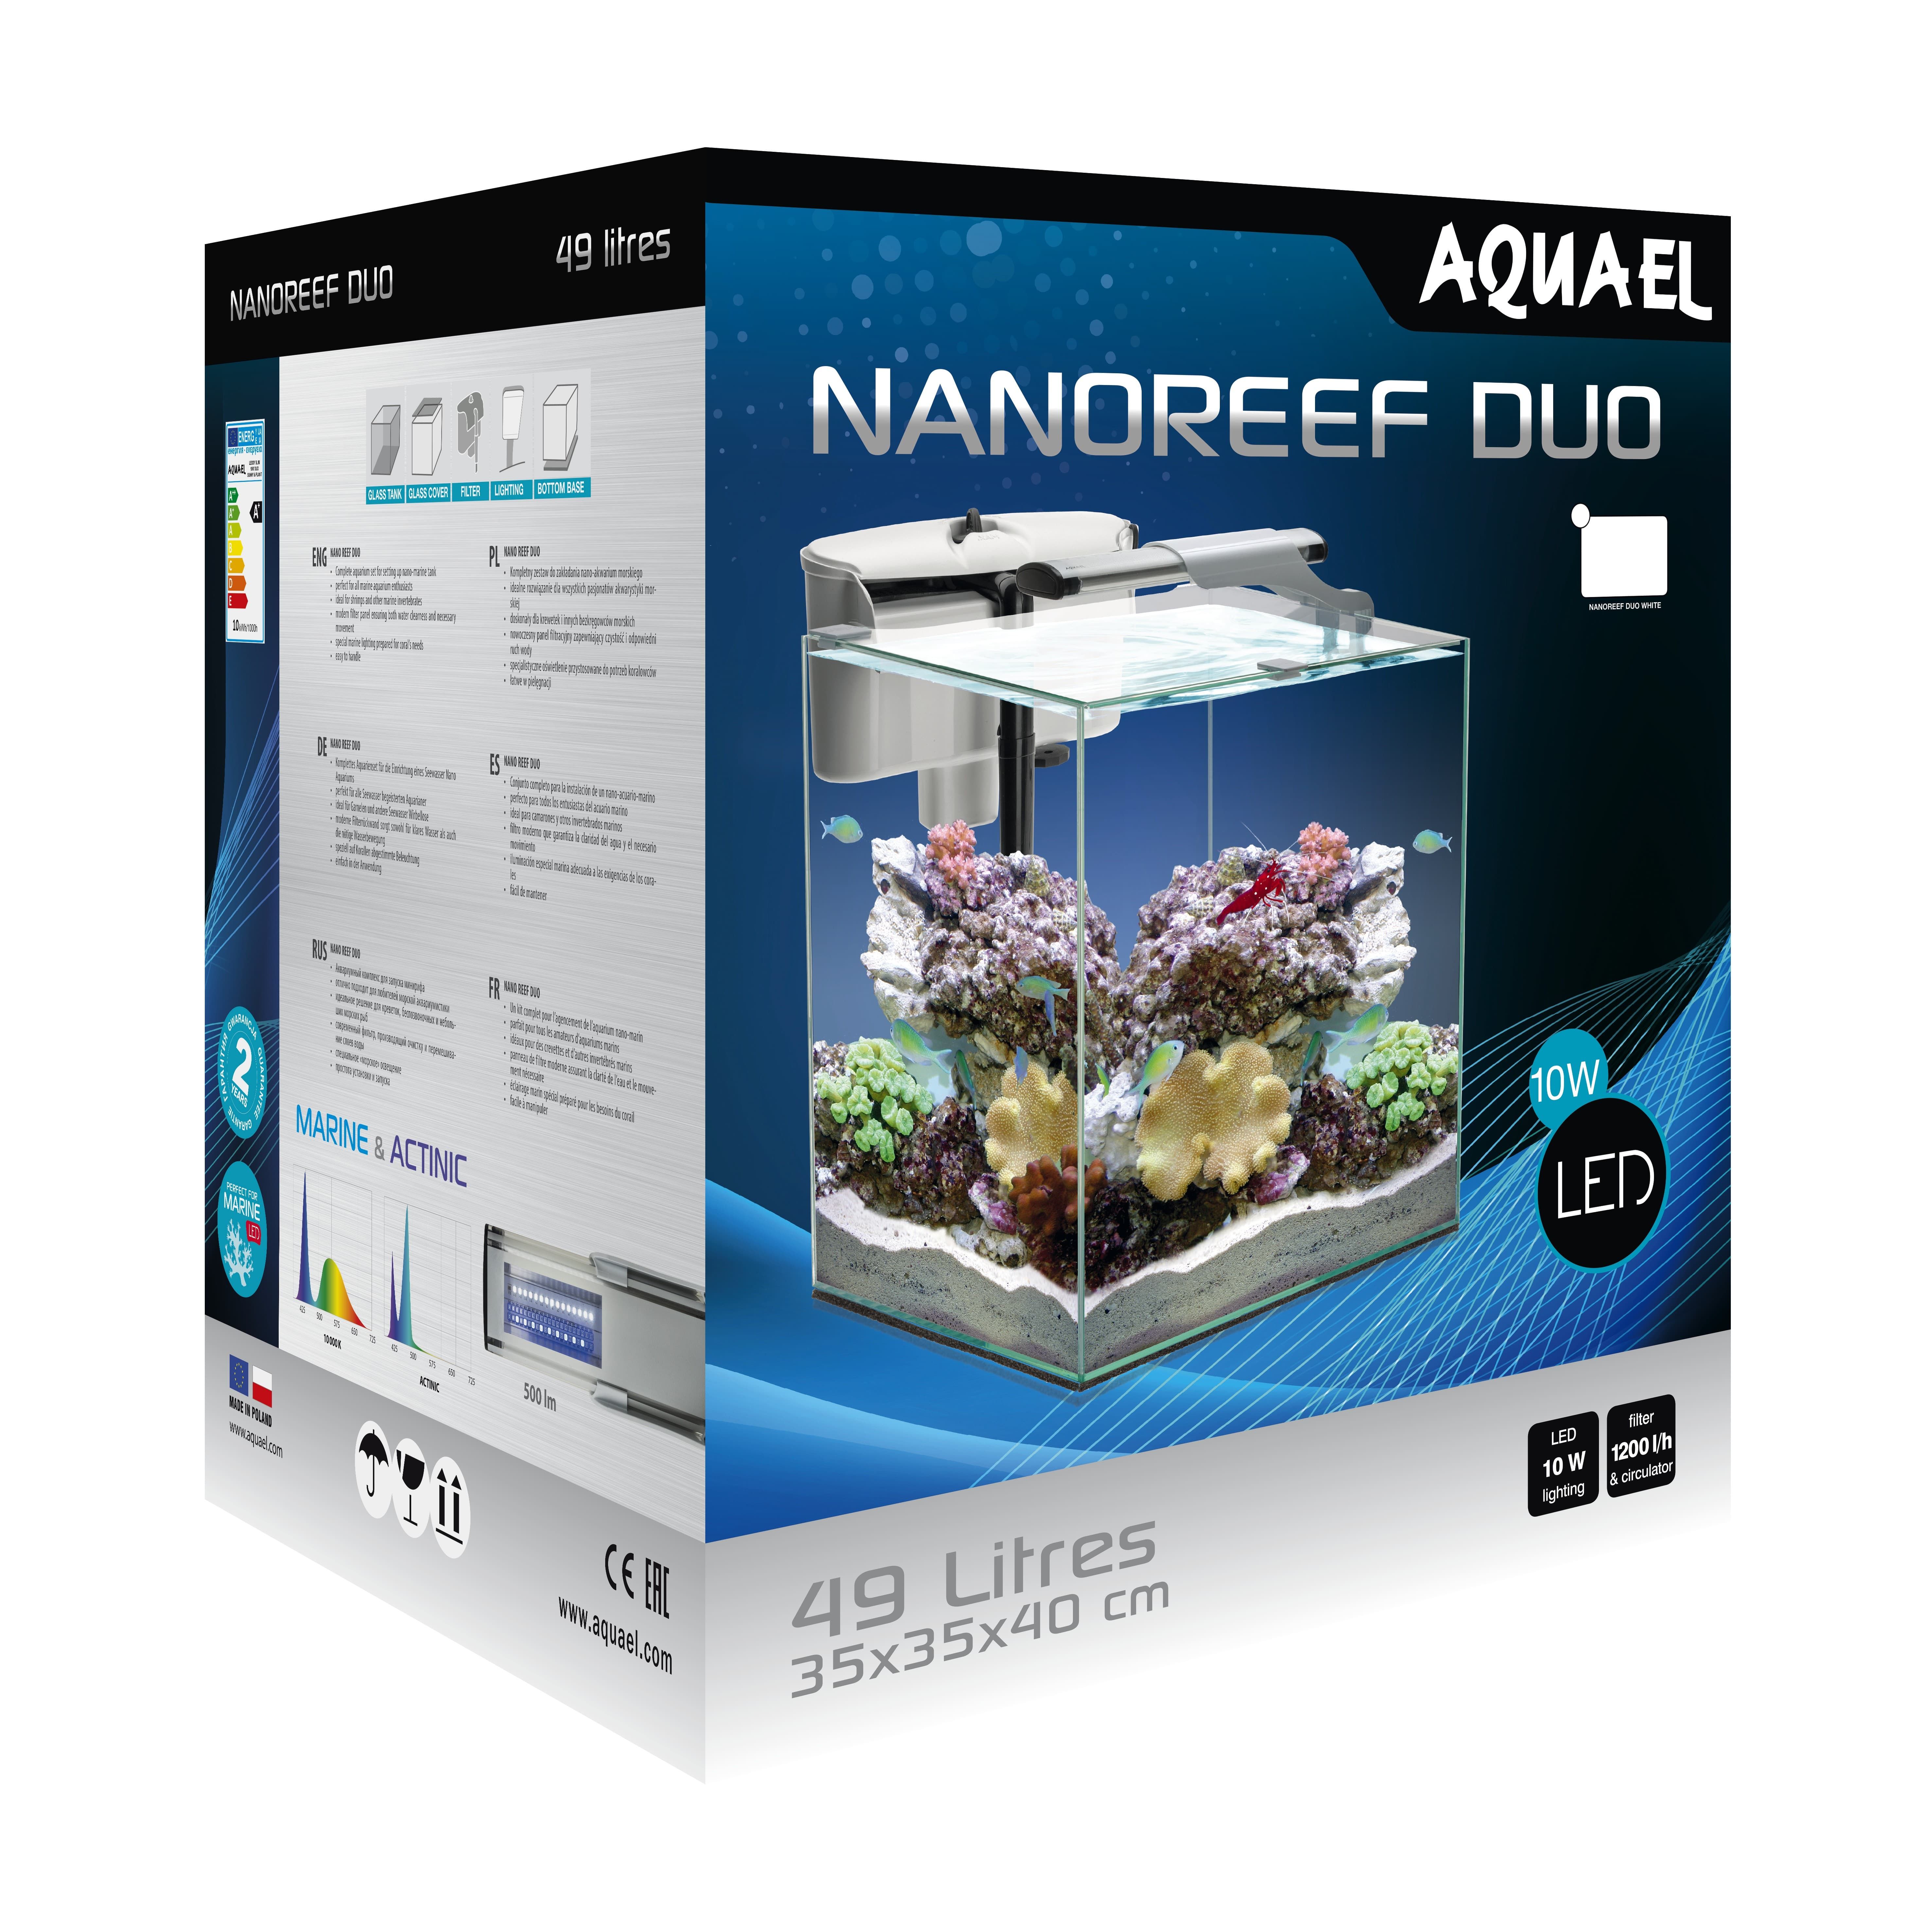 AquaEl Nano Reef Duo